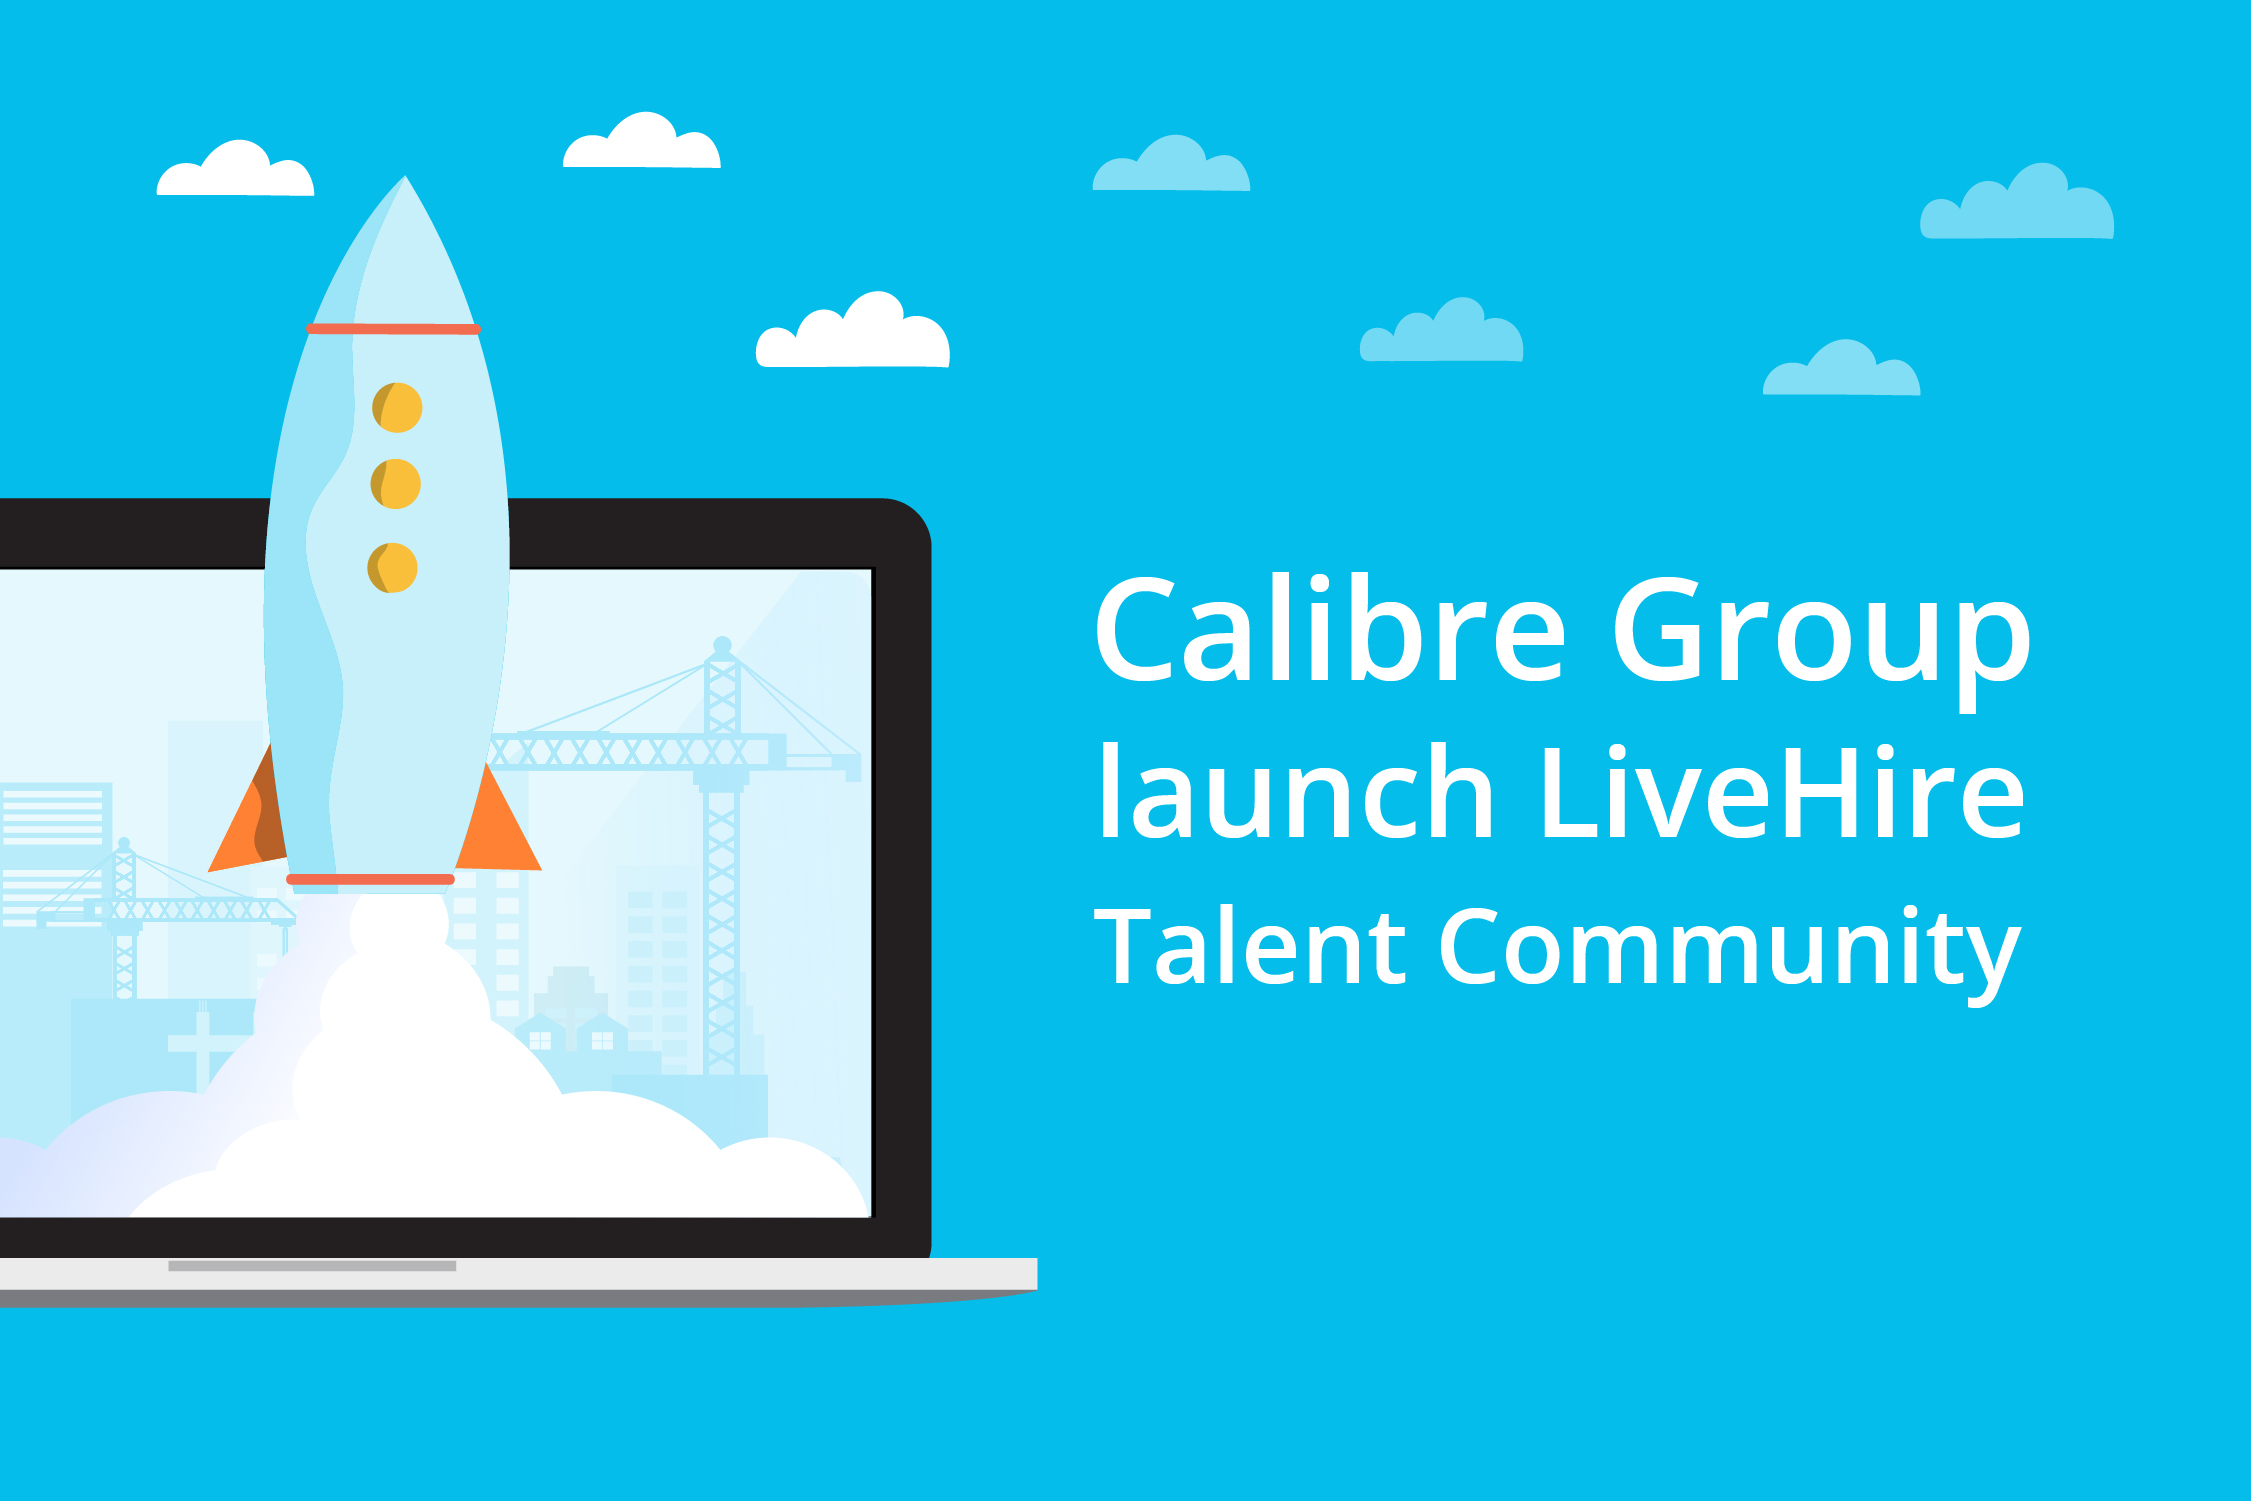 Calibre Group launch LiveHire Talent Community